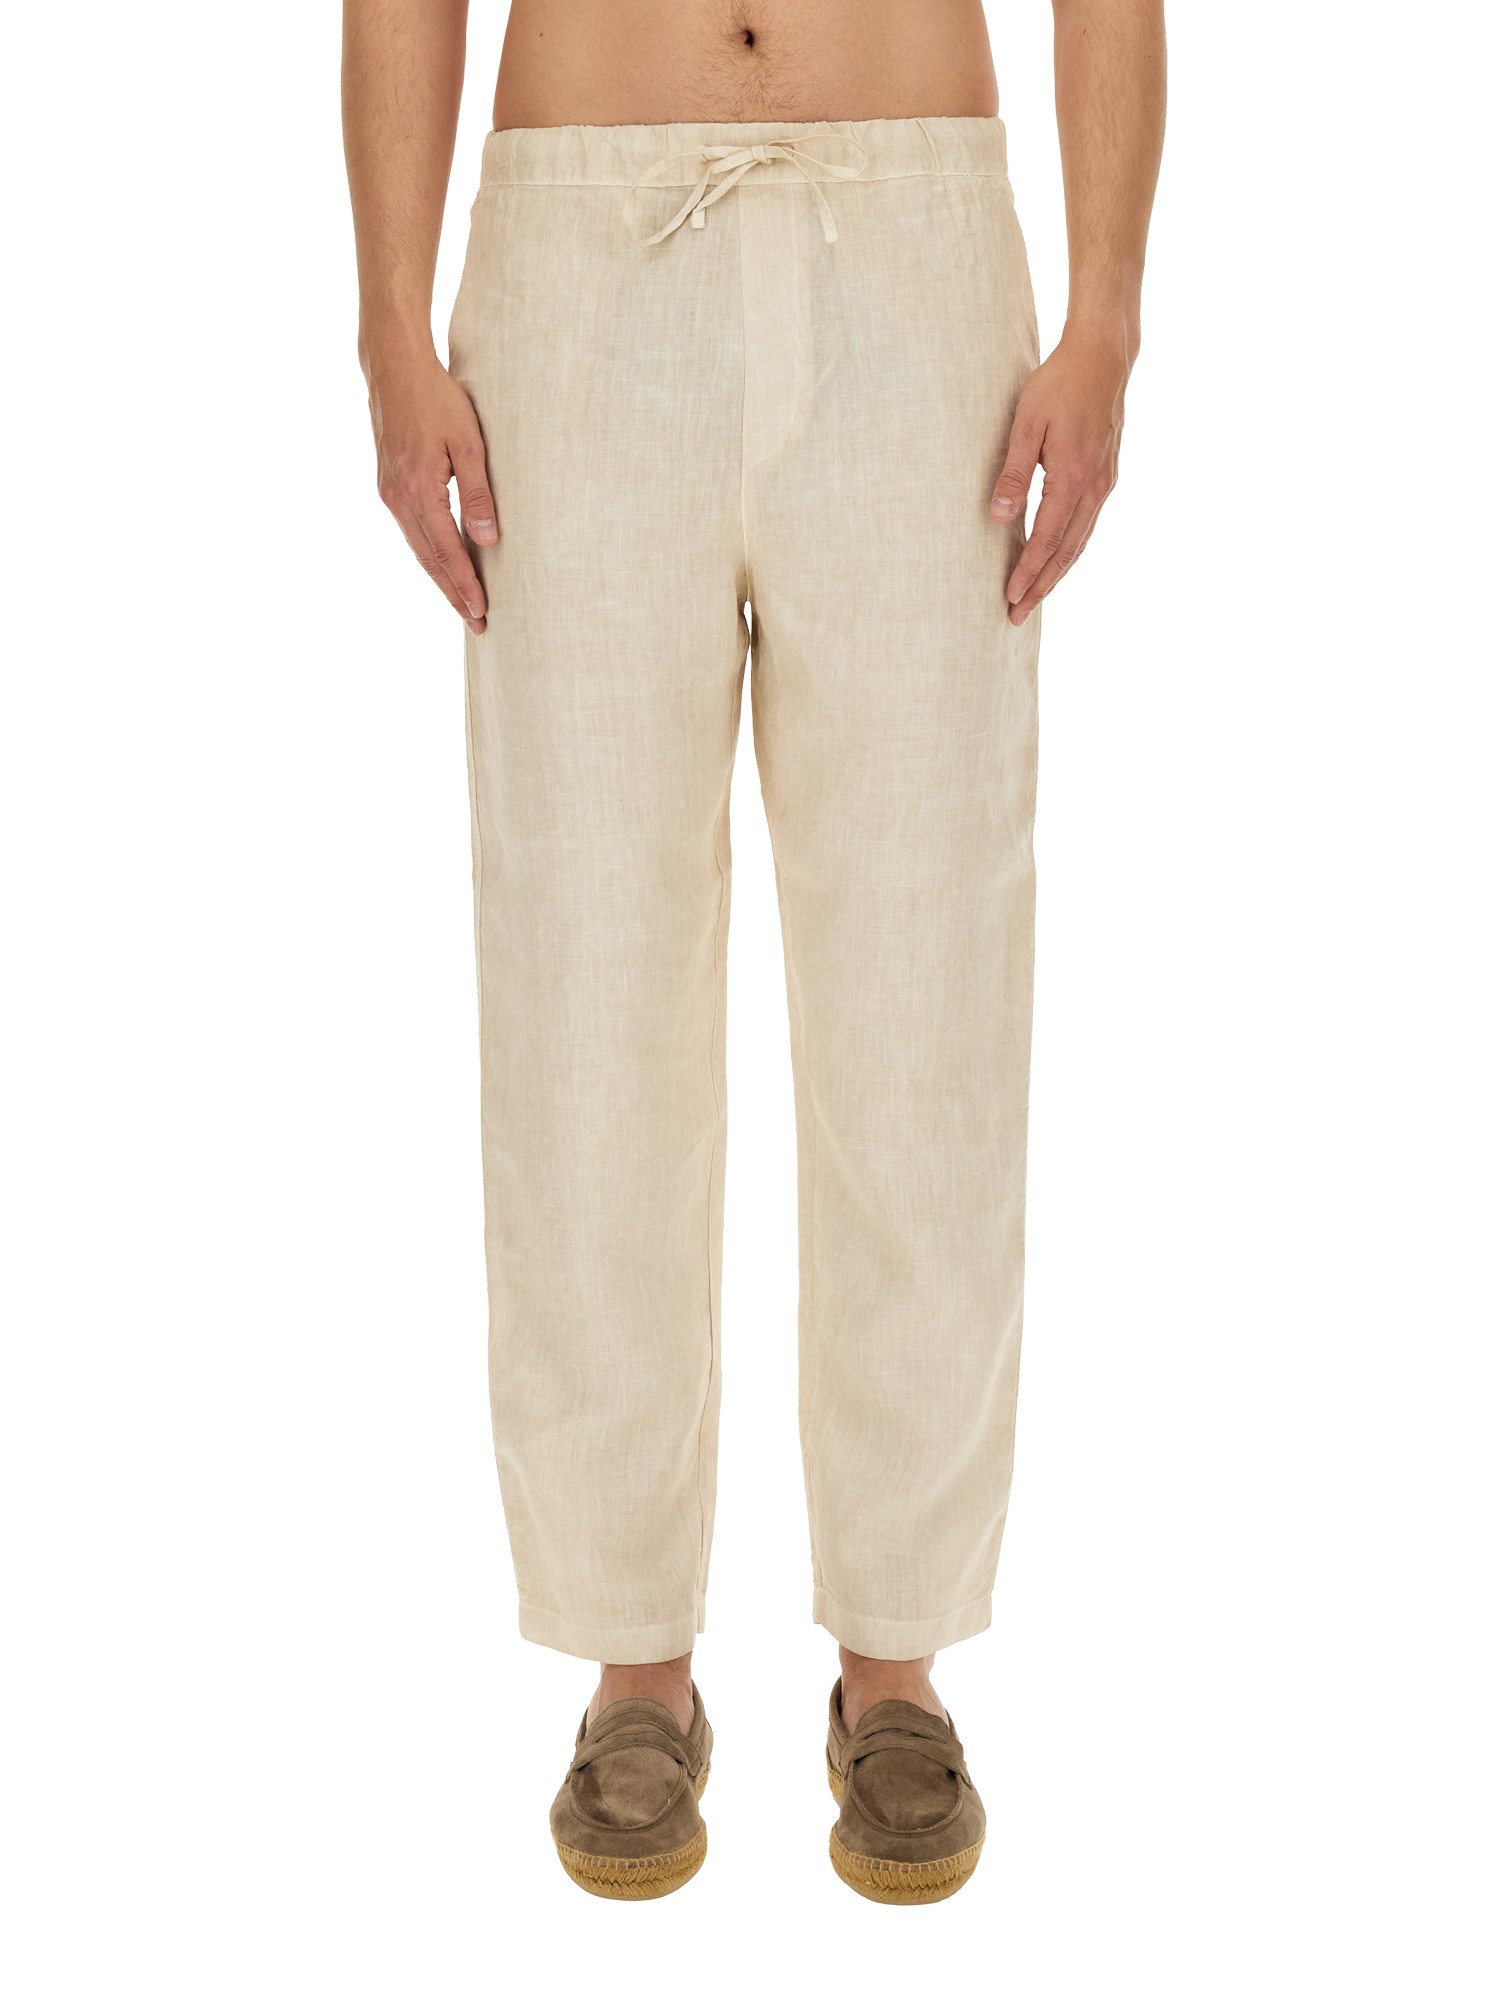 120% lino linen pants